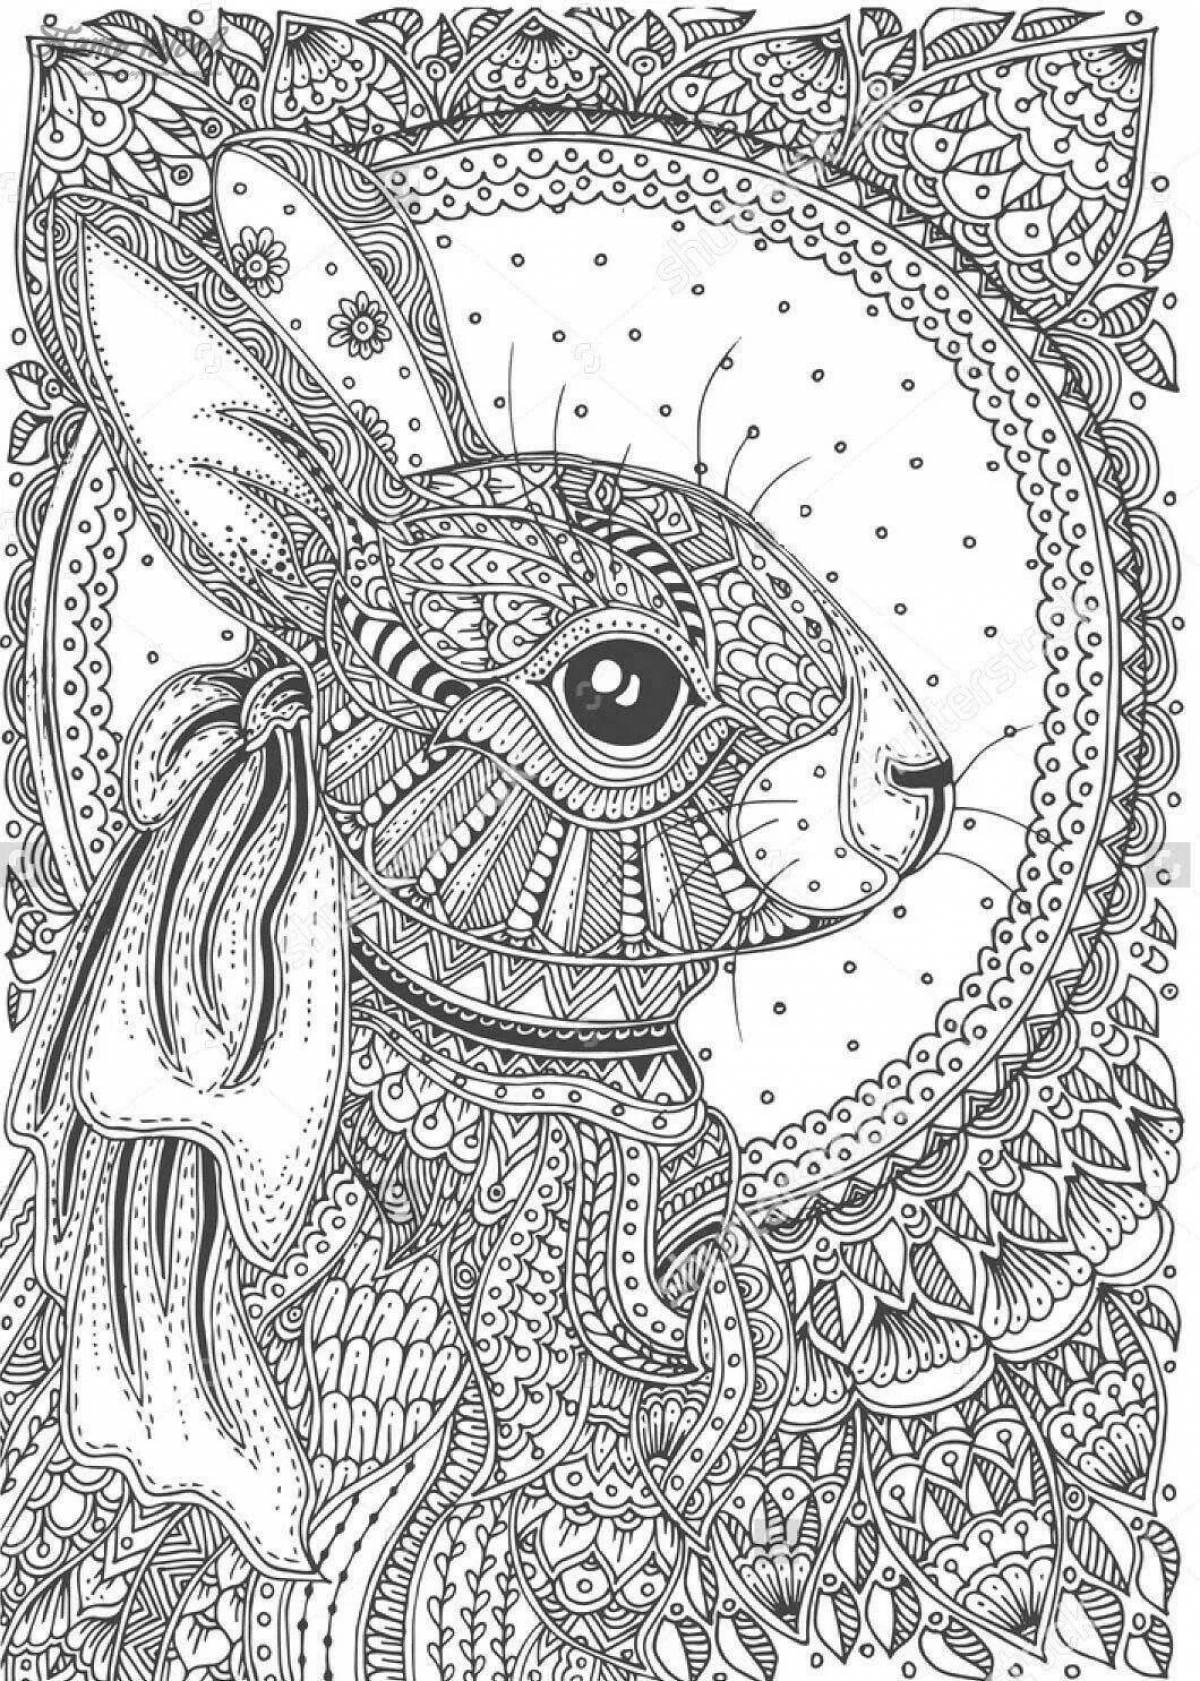 Coloring book invigorating anti-stress hare